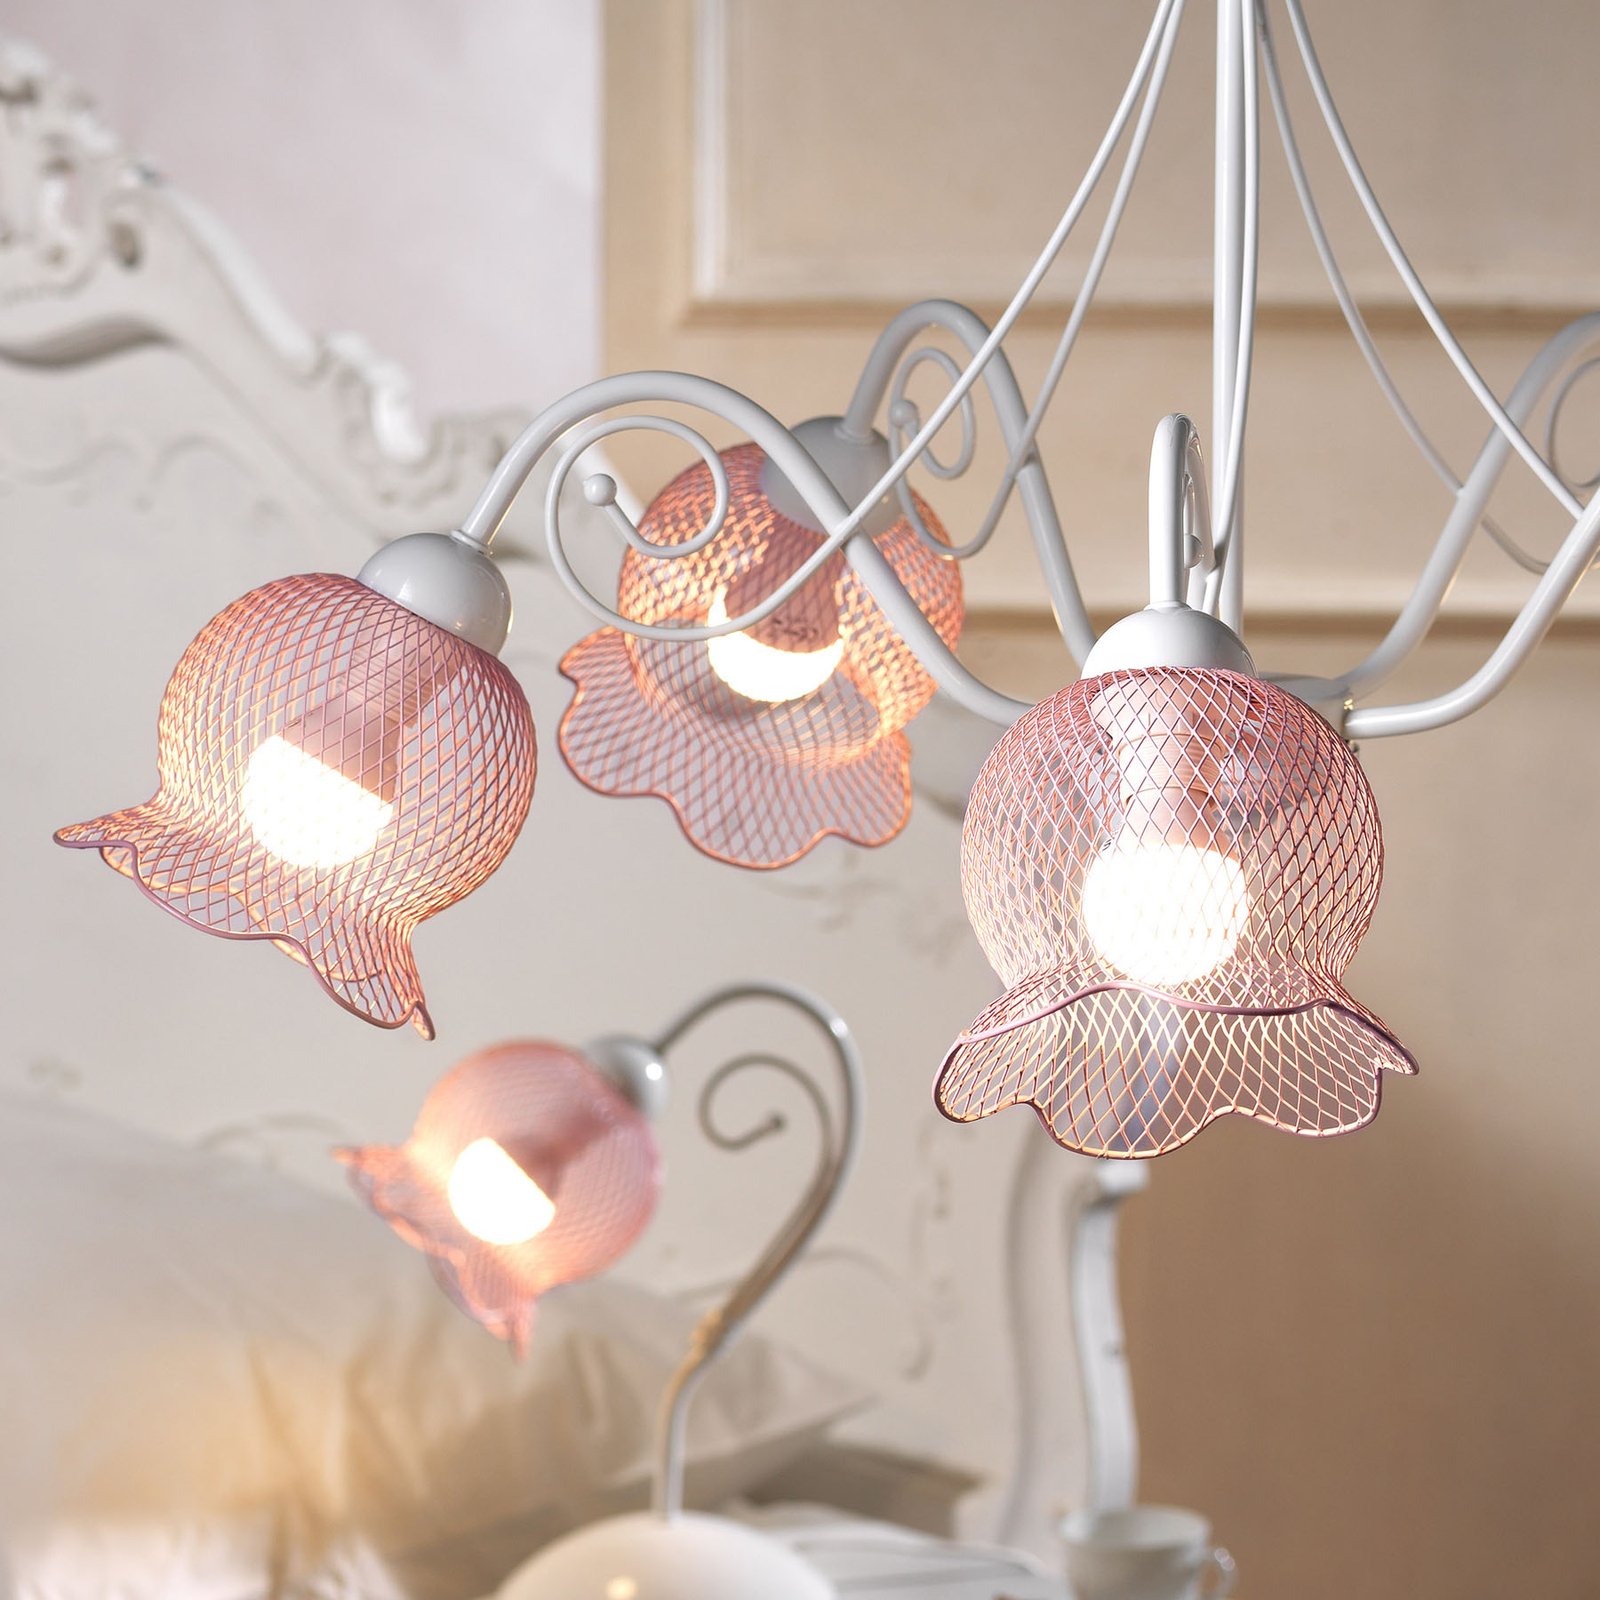 Hanglamp Mia met vijf net-kappen in roze